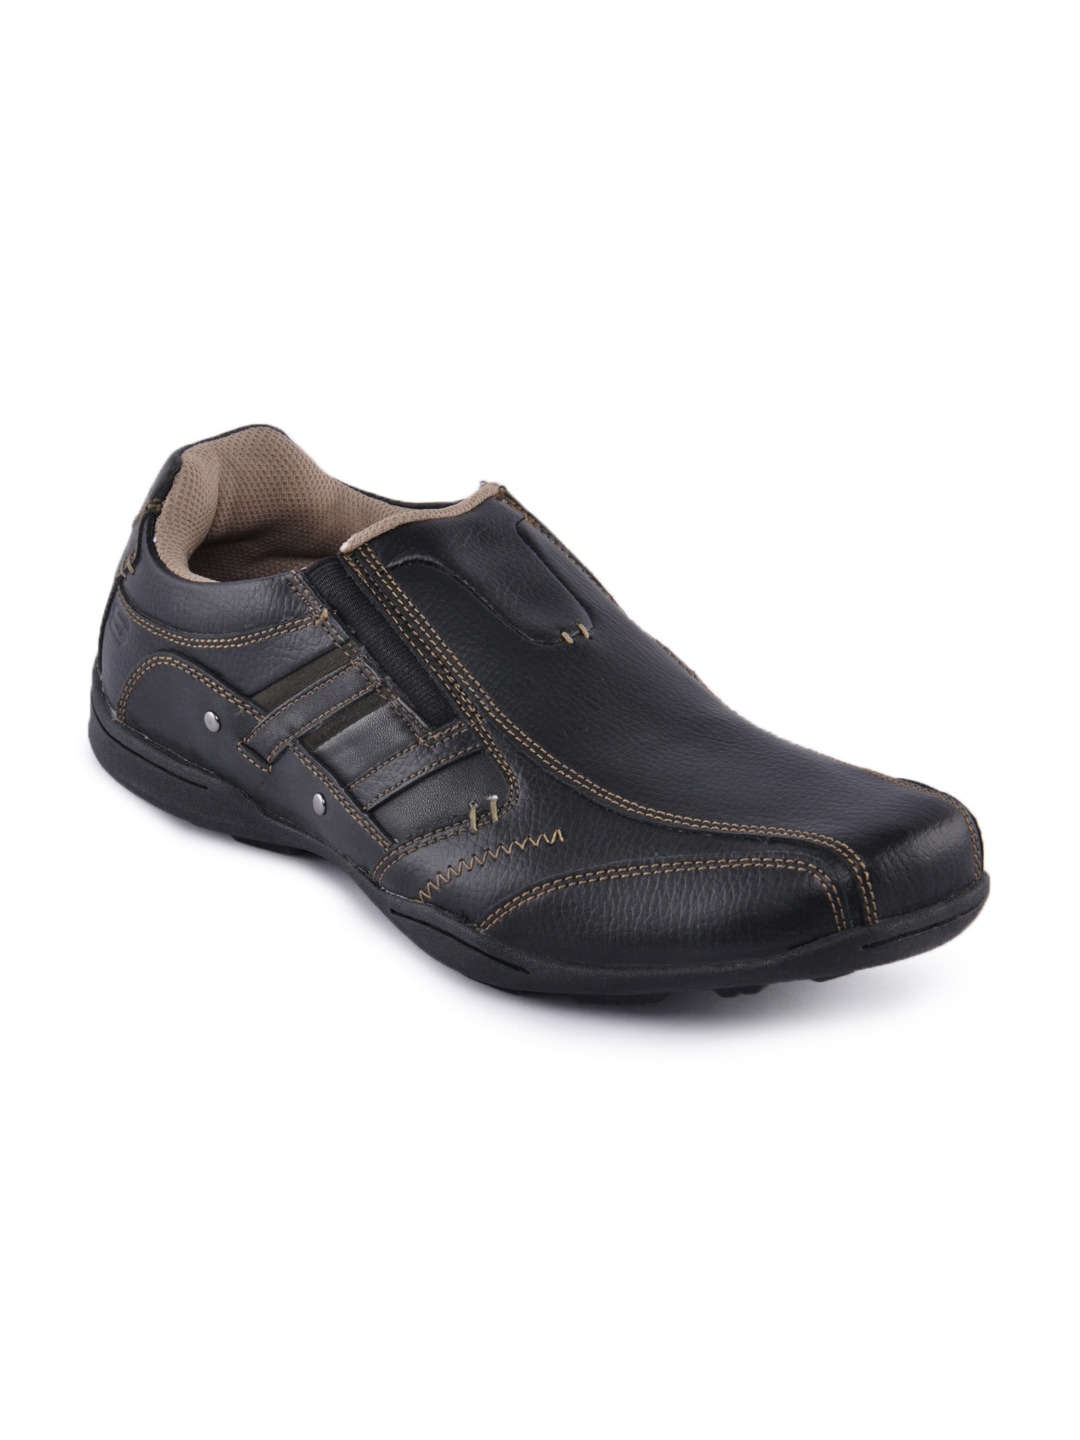 Skechers Men Black Casual Shoes